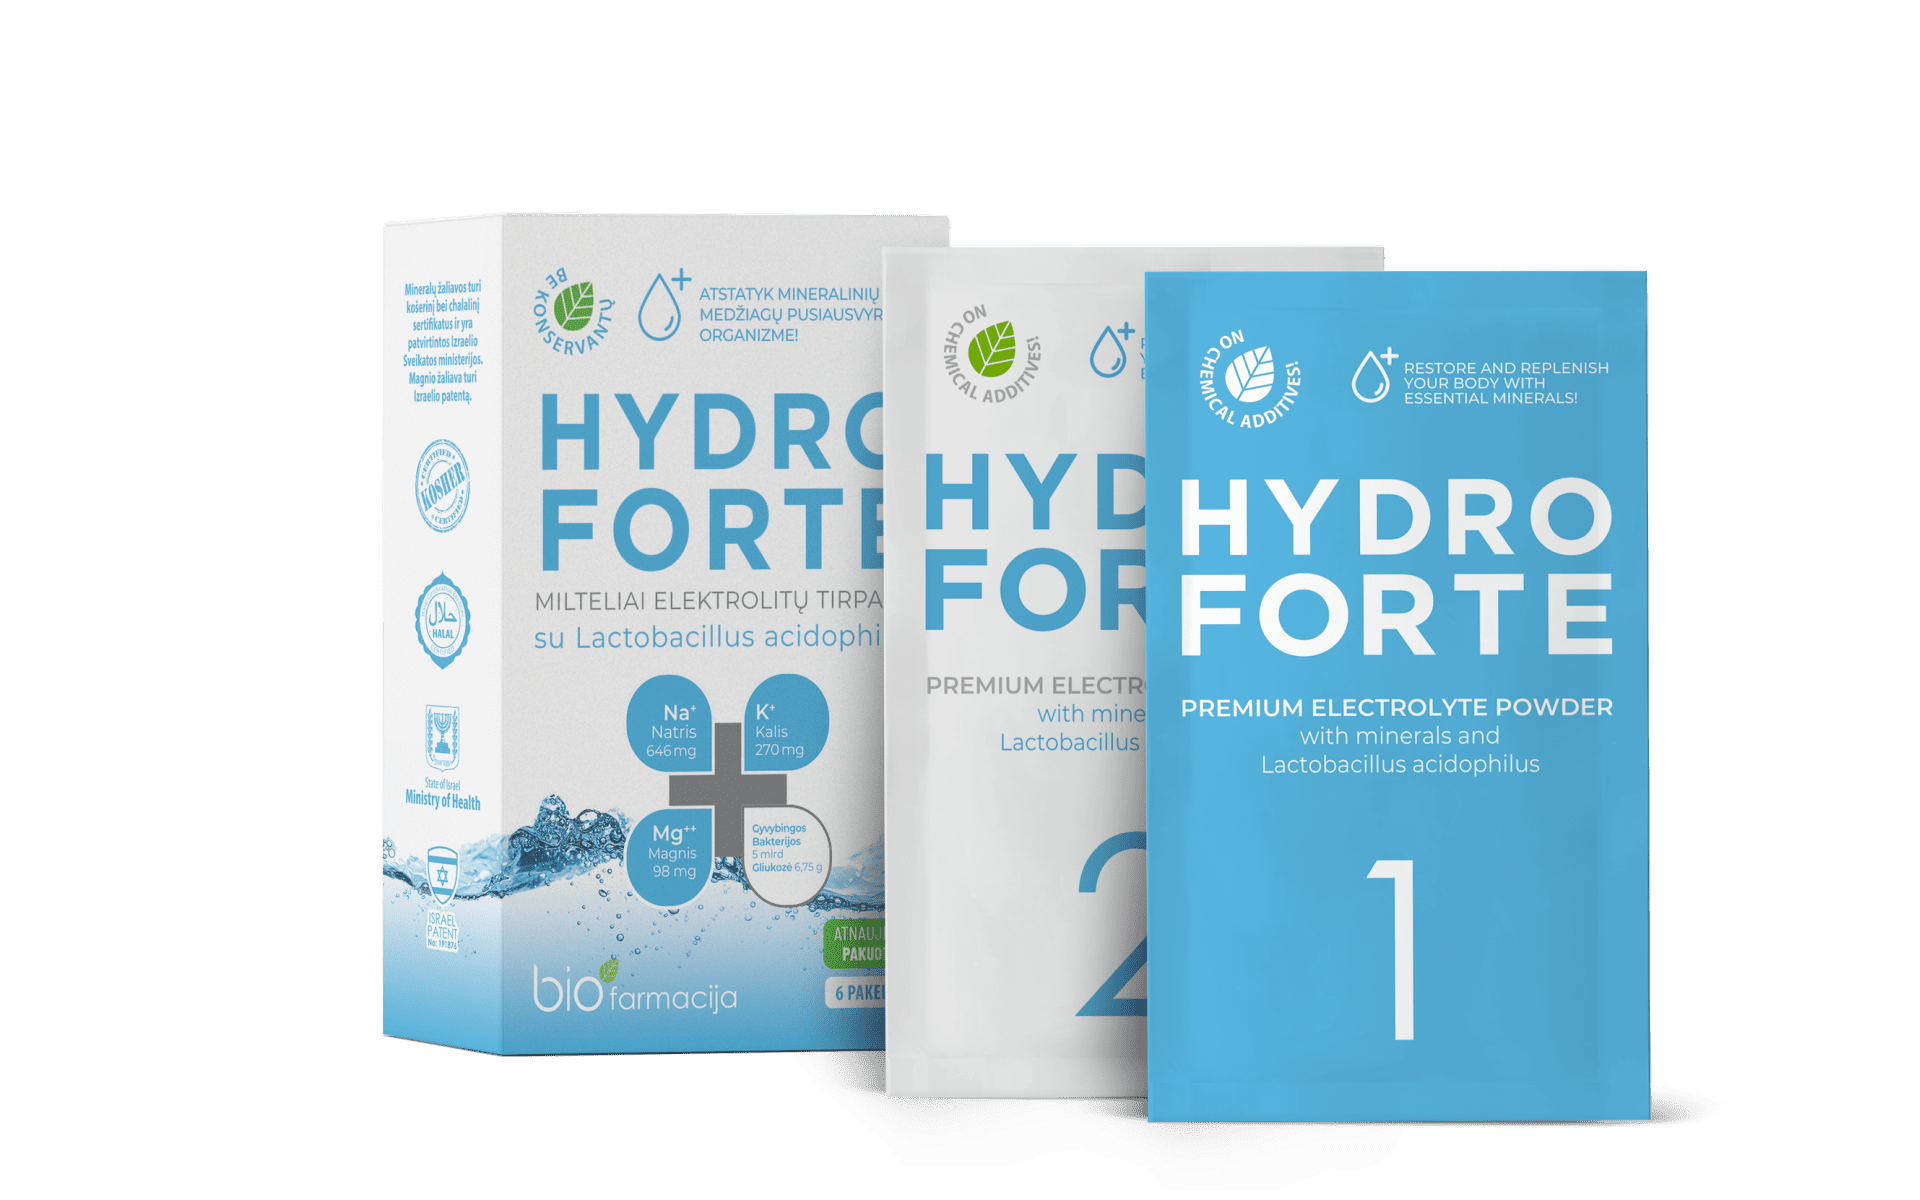 Hydro Forte / Elektrolüütide lahus mineraalainete ja elujõuliste piimhappebakteritega, mis aitavad organismi suure vedeliku kao puhul.